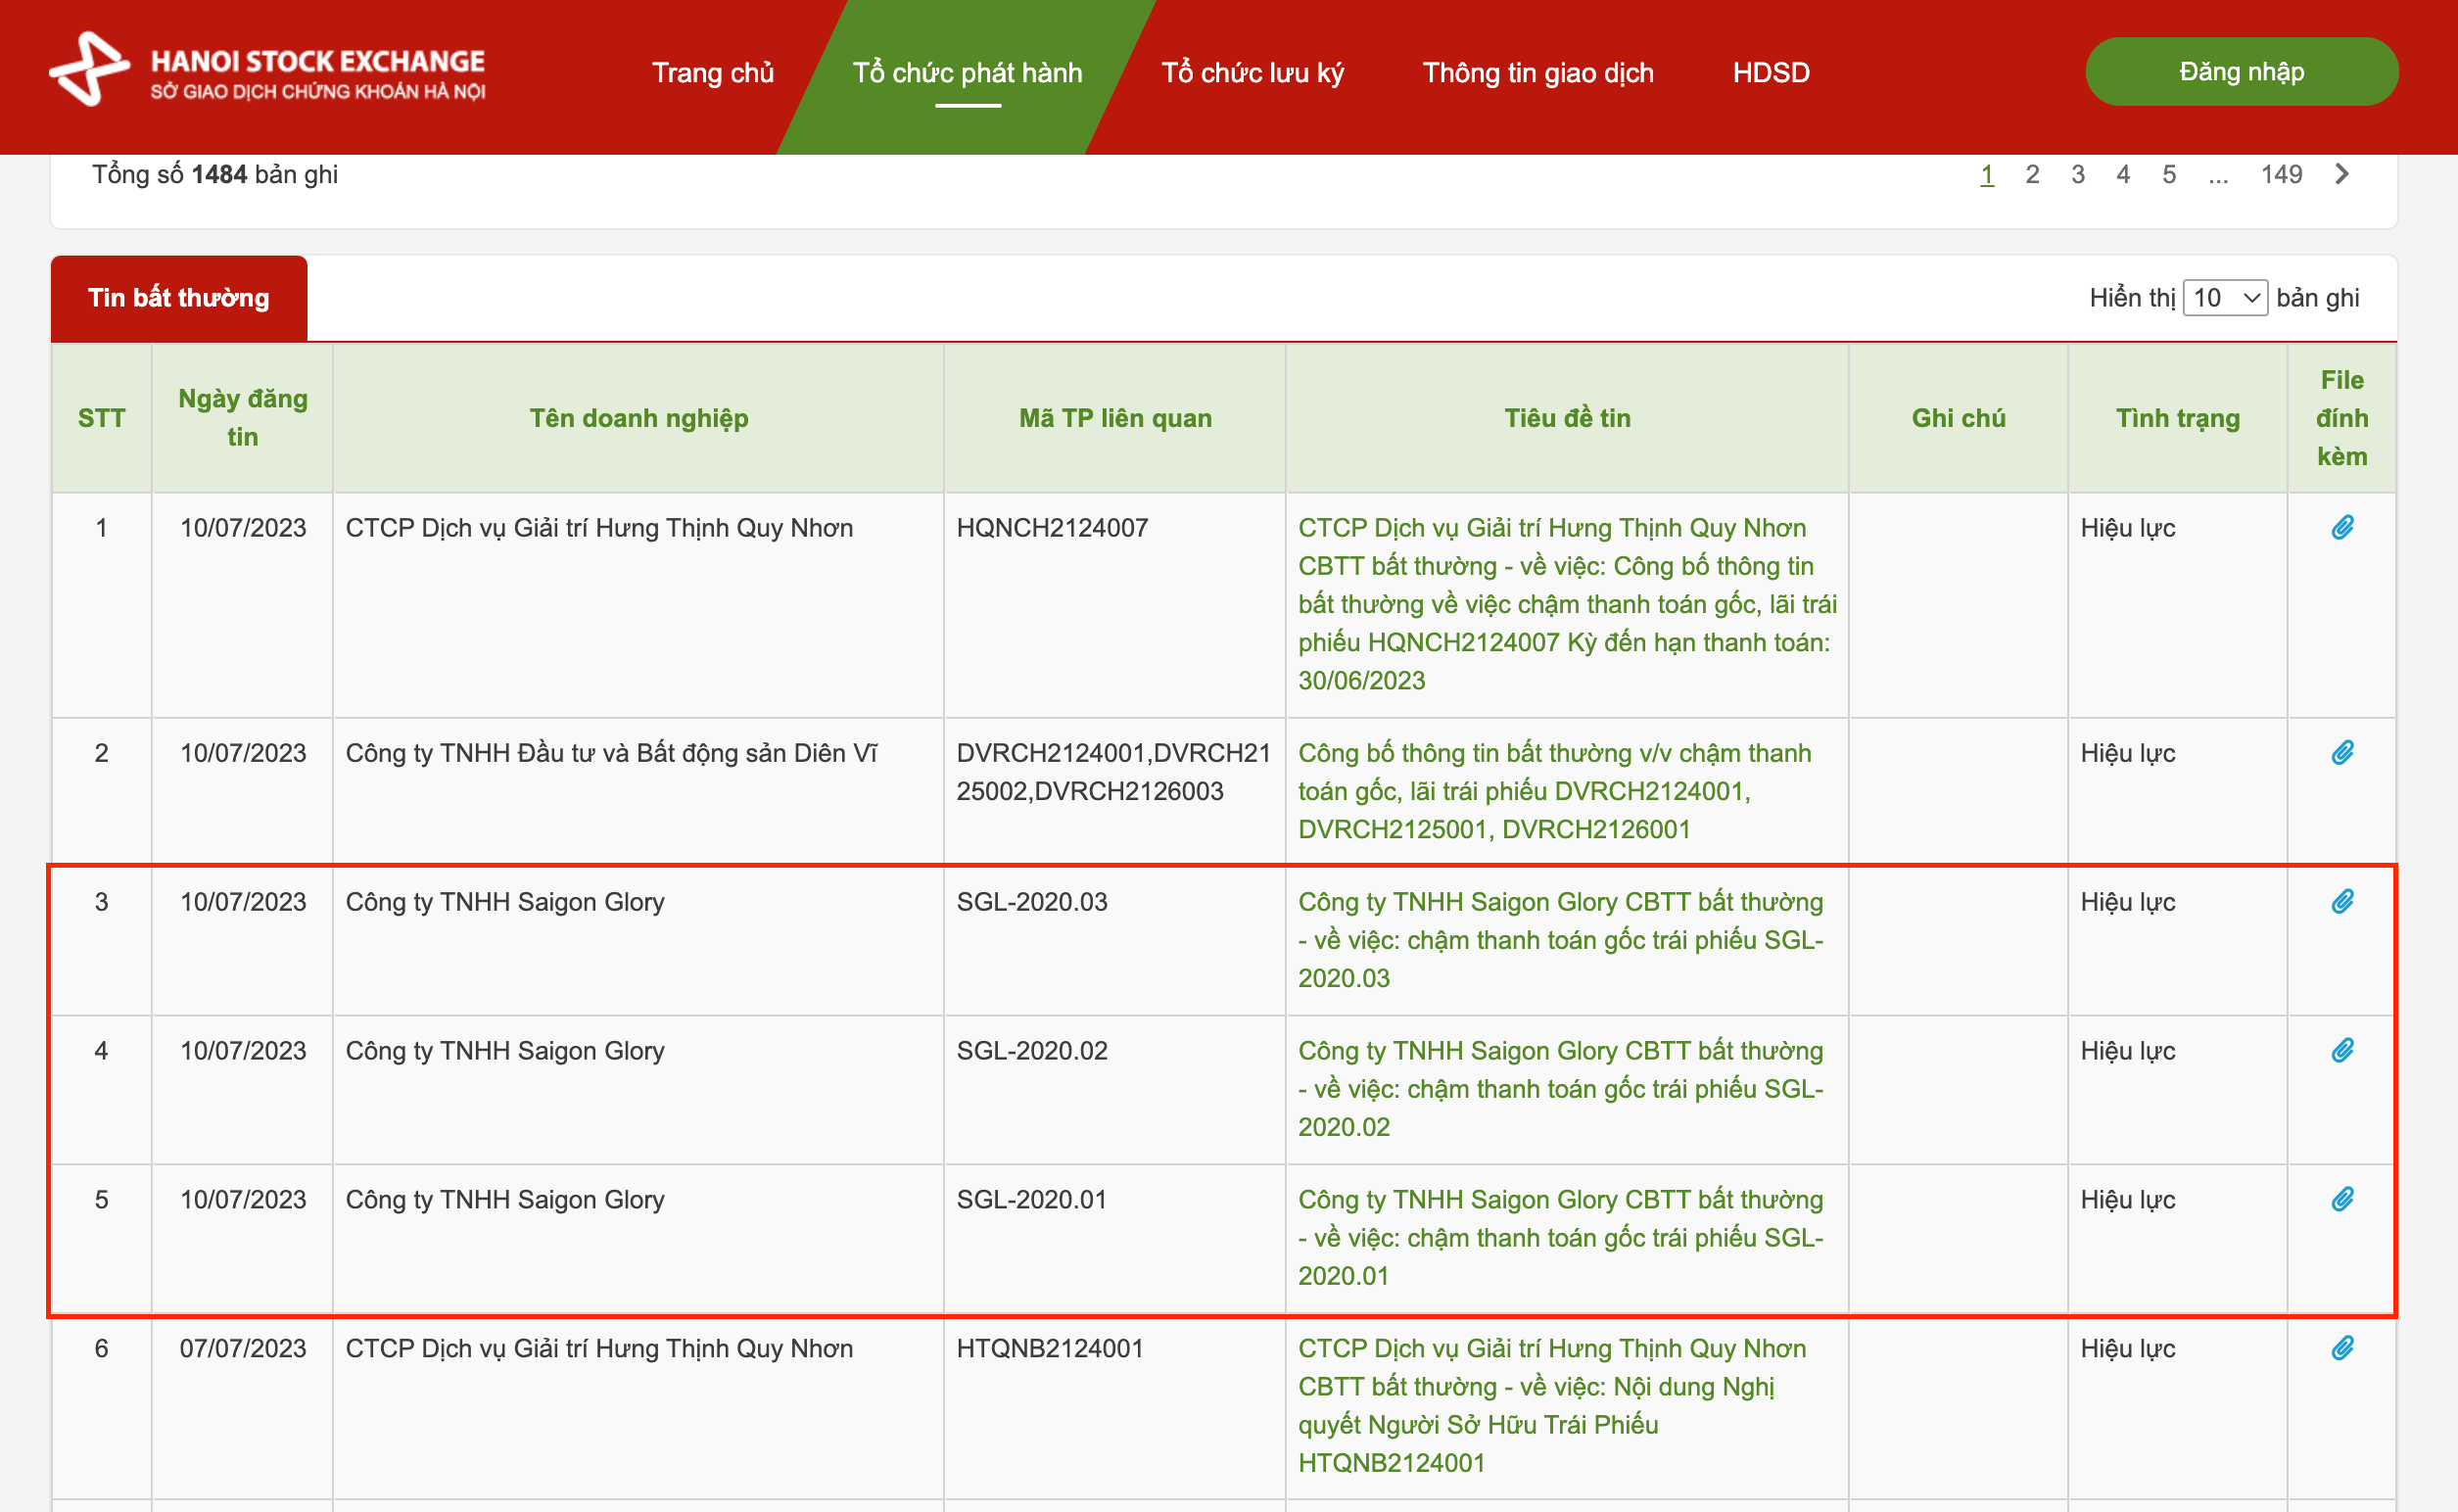 Saigon Glory chậm trả 3 lô trái phiếu với tổng số tiền 3.000 tỉ đồng. Ảnh: Chụp màn hình